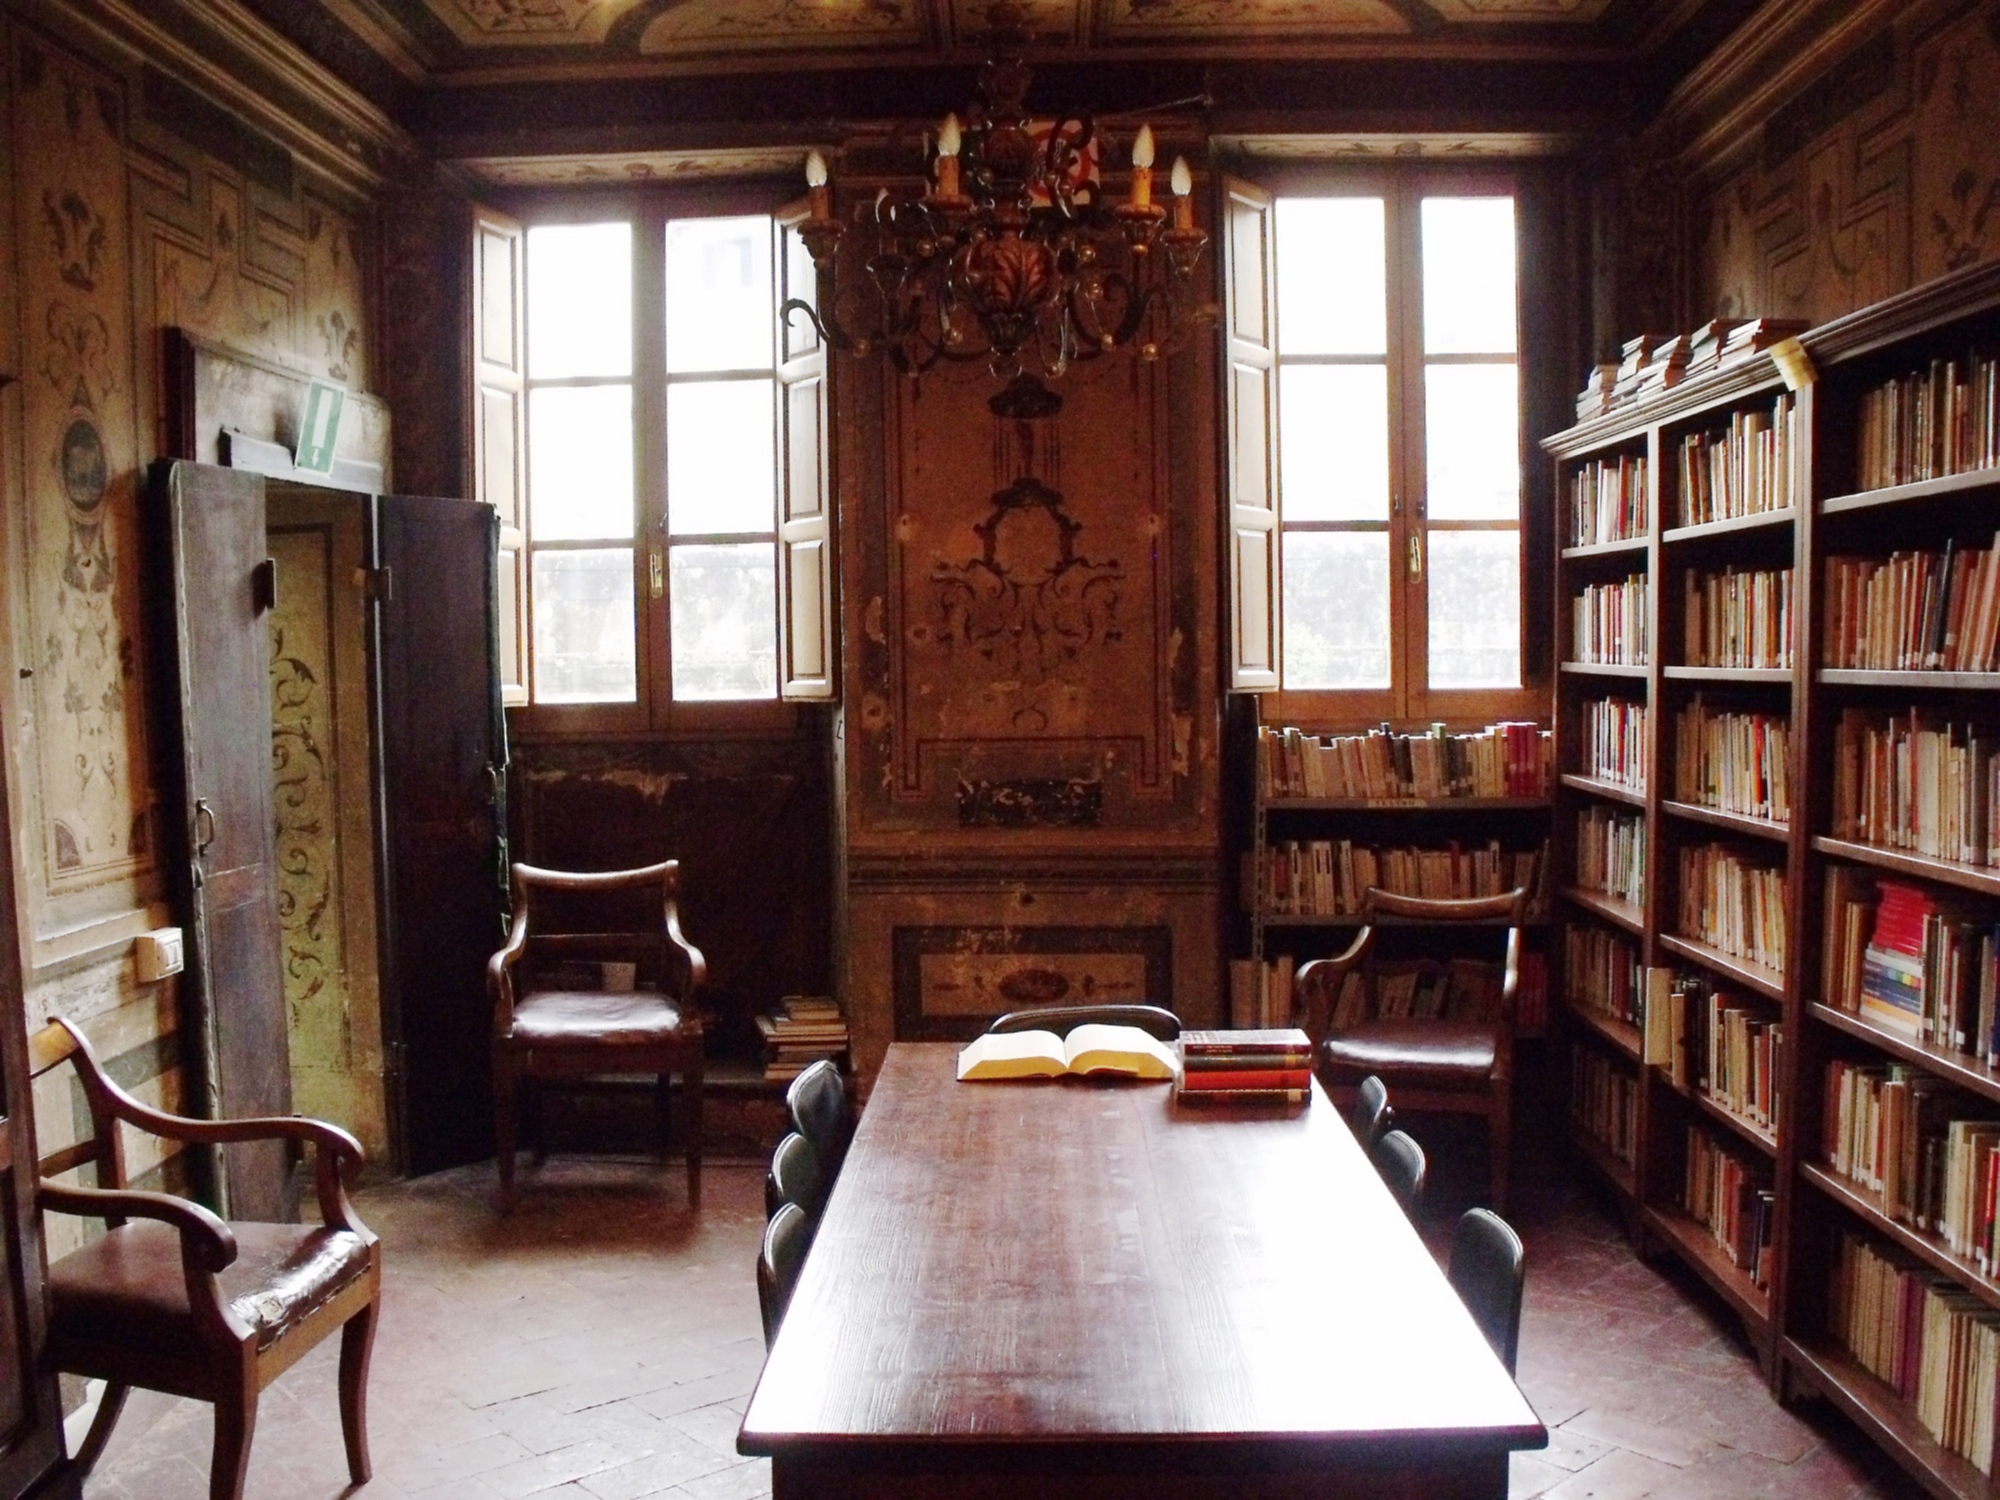 Biblioteca comunale, Palazzo Corsi, Anghiari